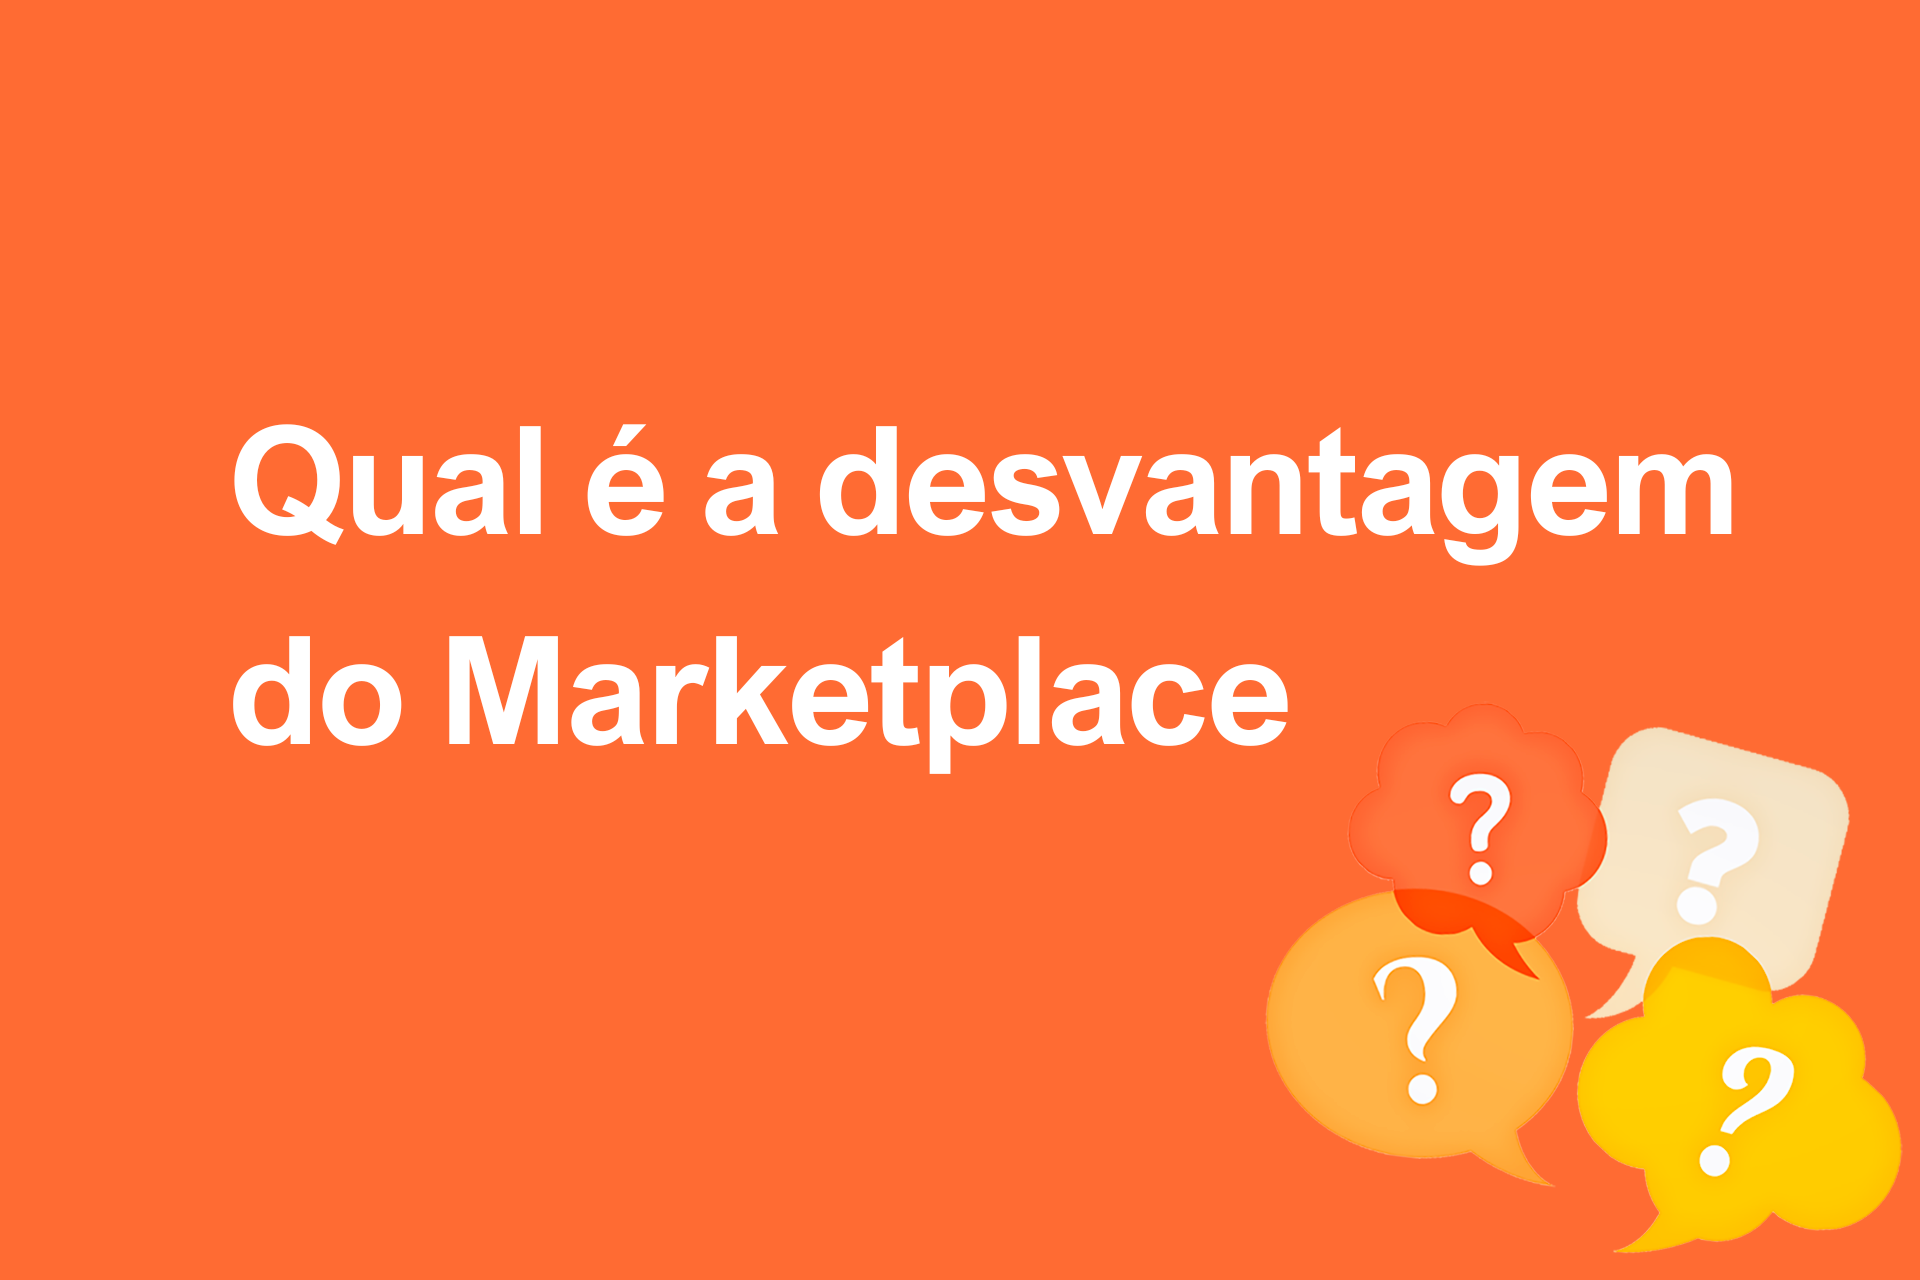 Qual é a desvantagem do Marketplace?